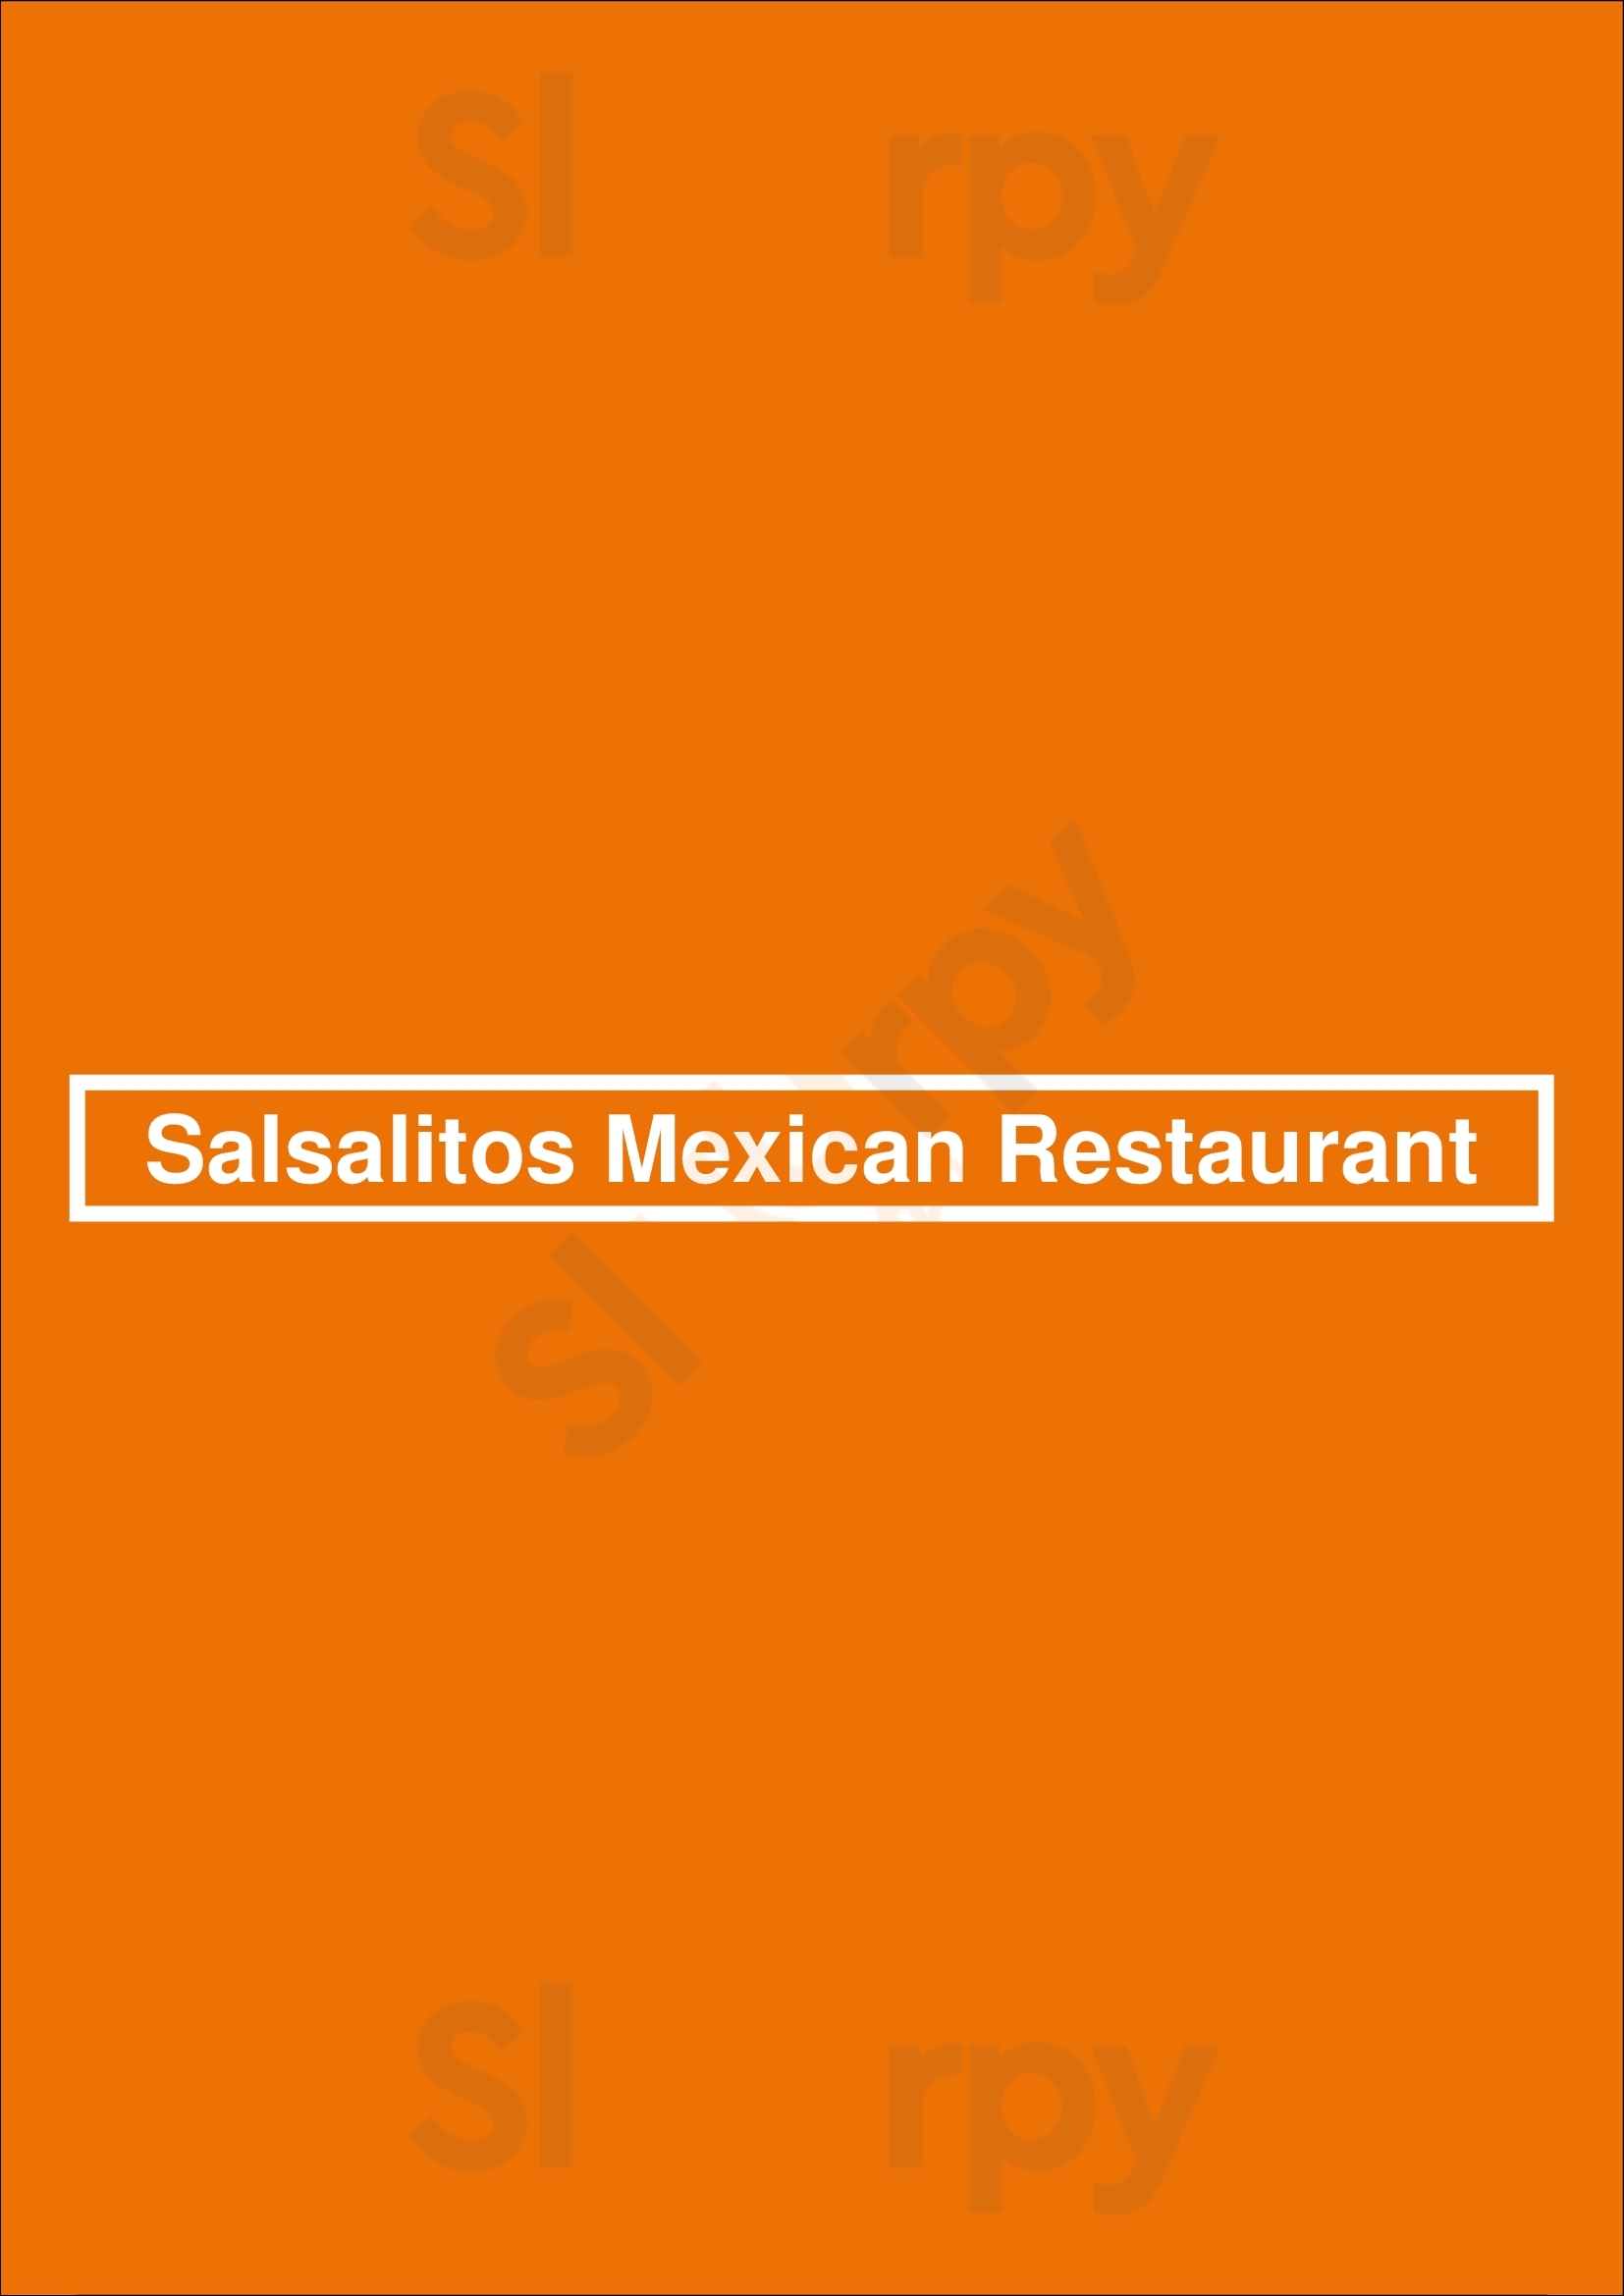 Salsalitos Mexican Restaurant San Antonio Menu - 1